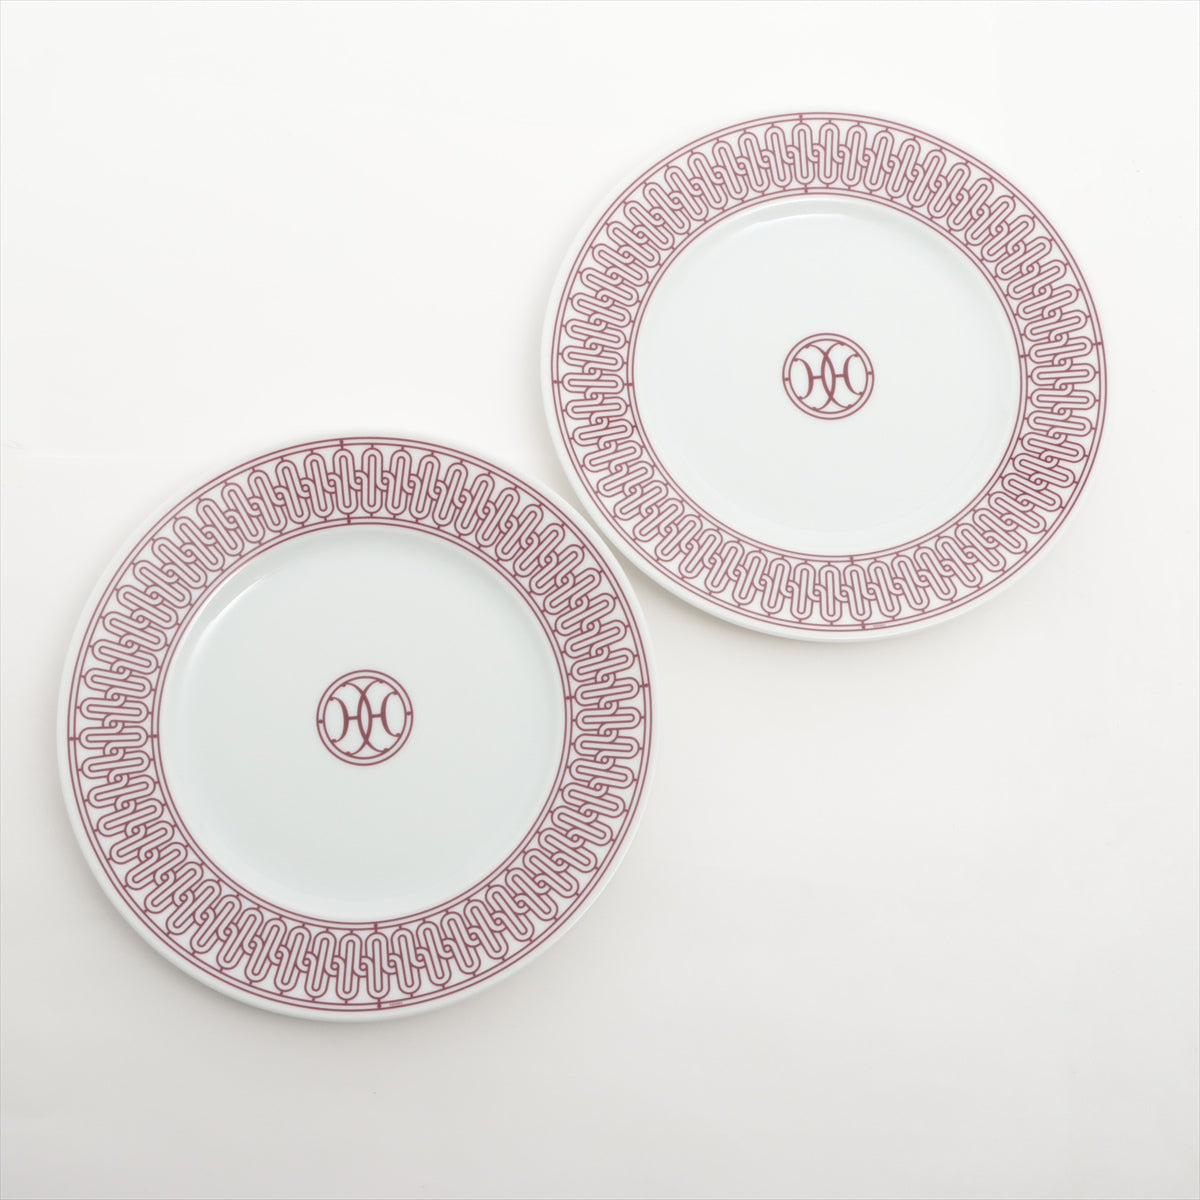 Hermès H deco Pair plates 22.5cm Ceramic Red x white